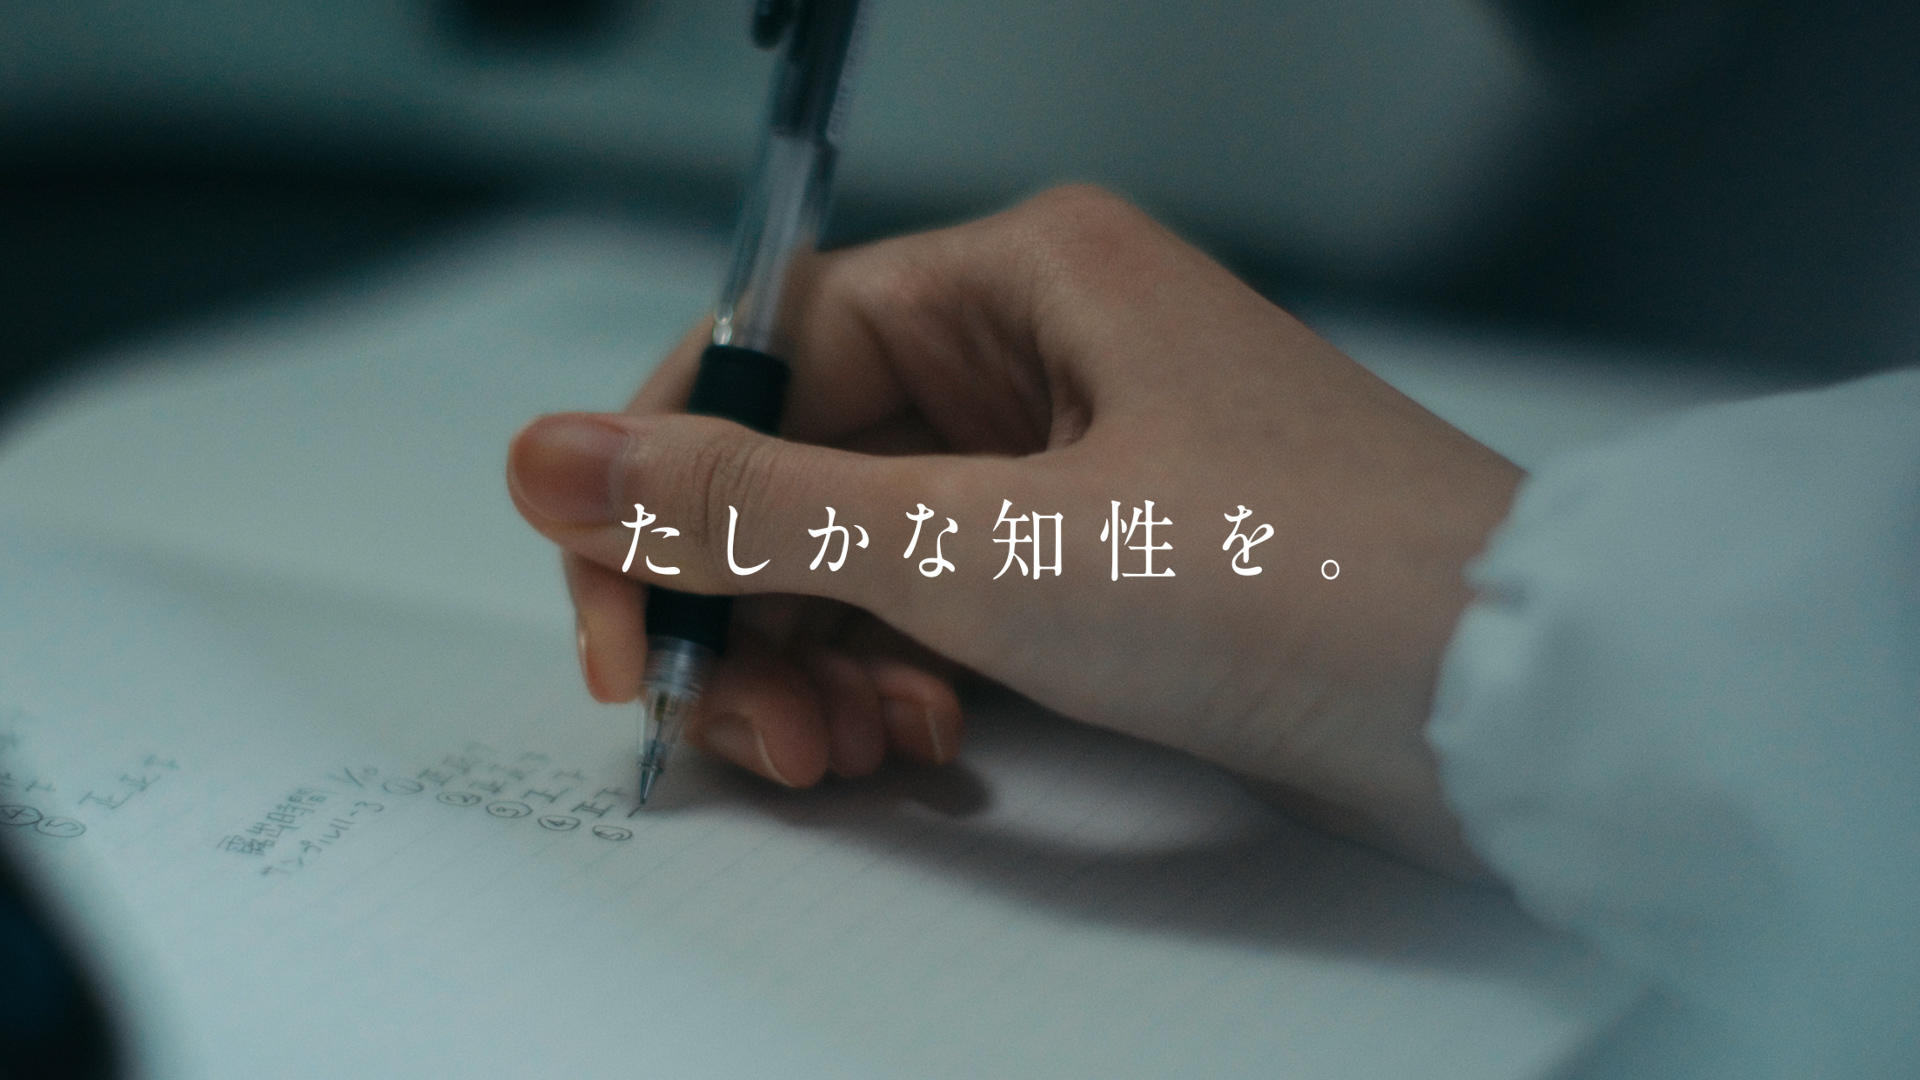 日本女子大学の新ブランドムービー「世界をひらく手。」を公開 -- タグライン「私が動く、世界がひらく。」をリアルな学生生活で表現 --